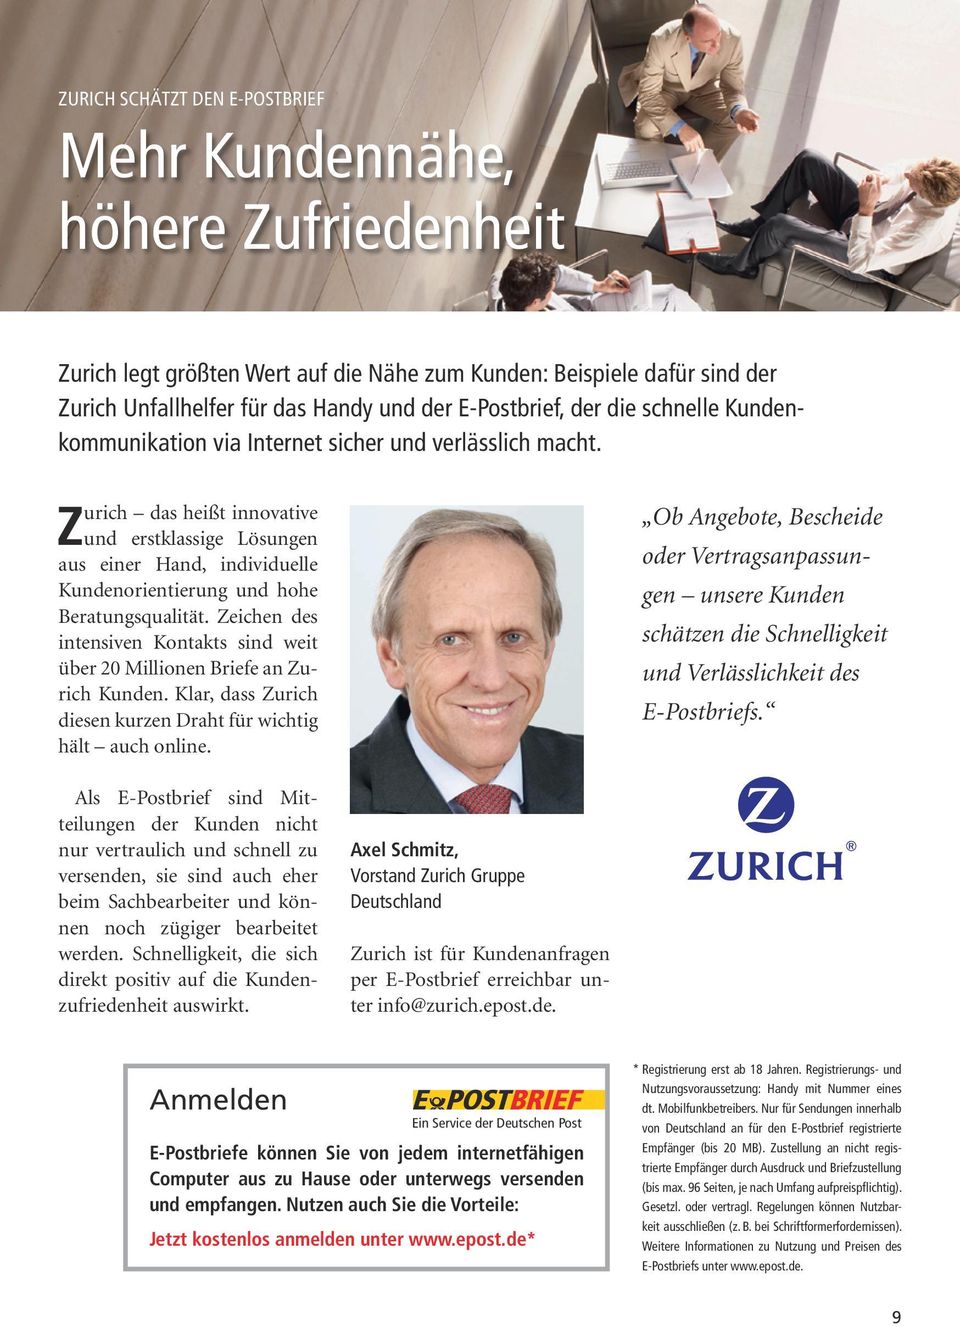 Zurich das heißt innovative und erstklassige Lösungen aus einer Hand, individuelle Kundenorientierung und hohe Beratungsqualität.